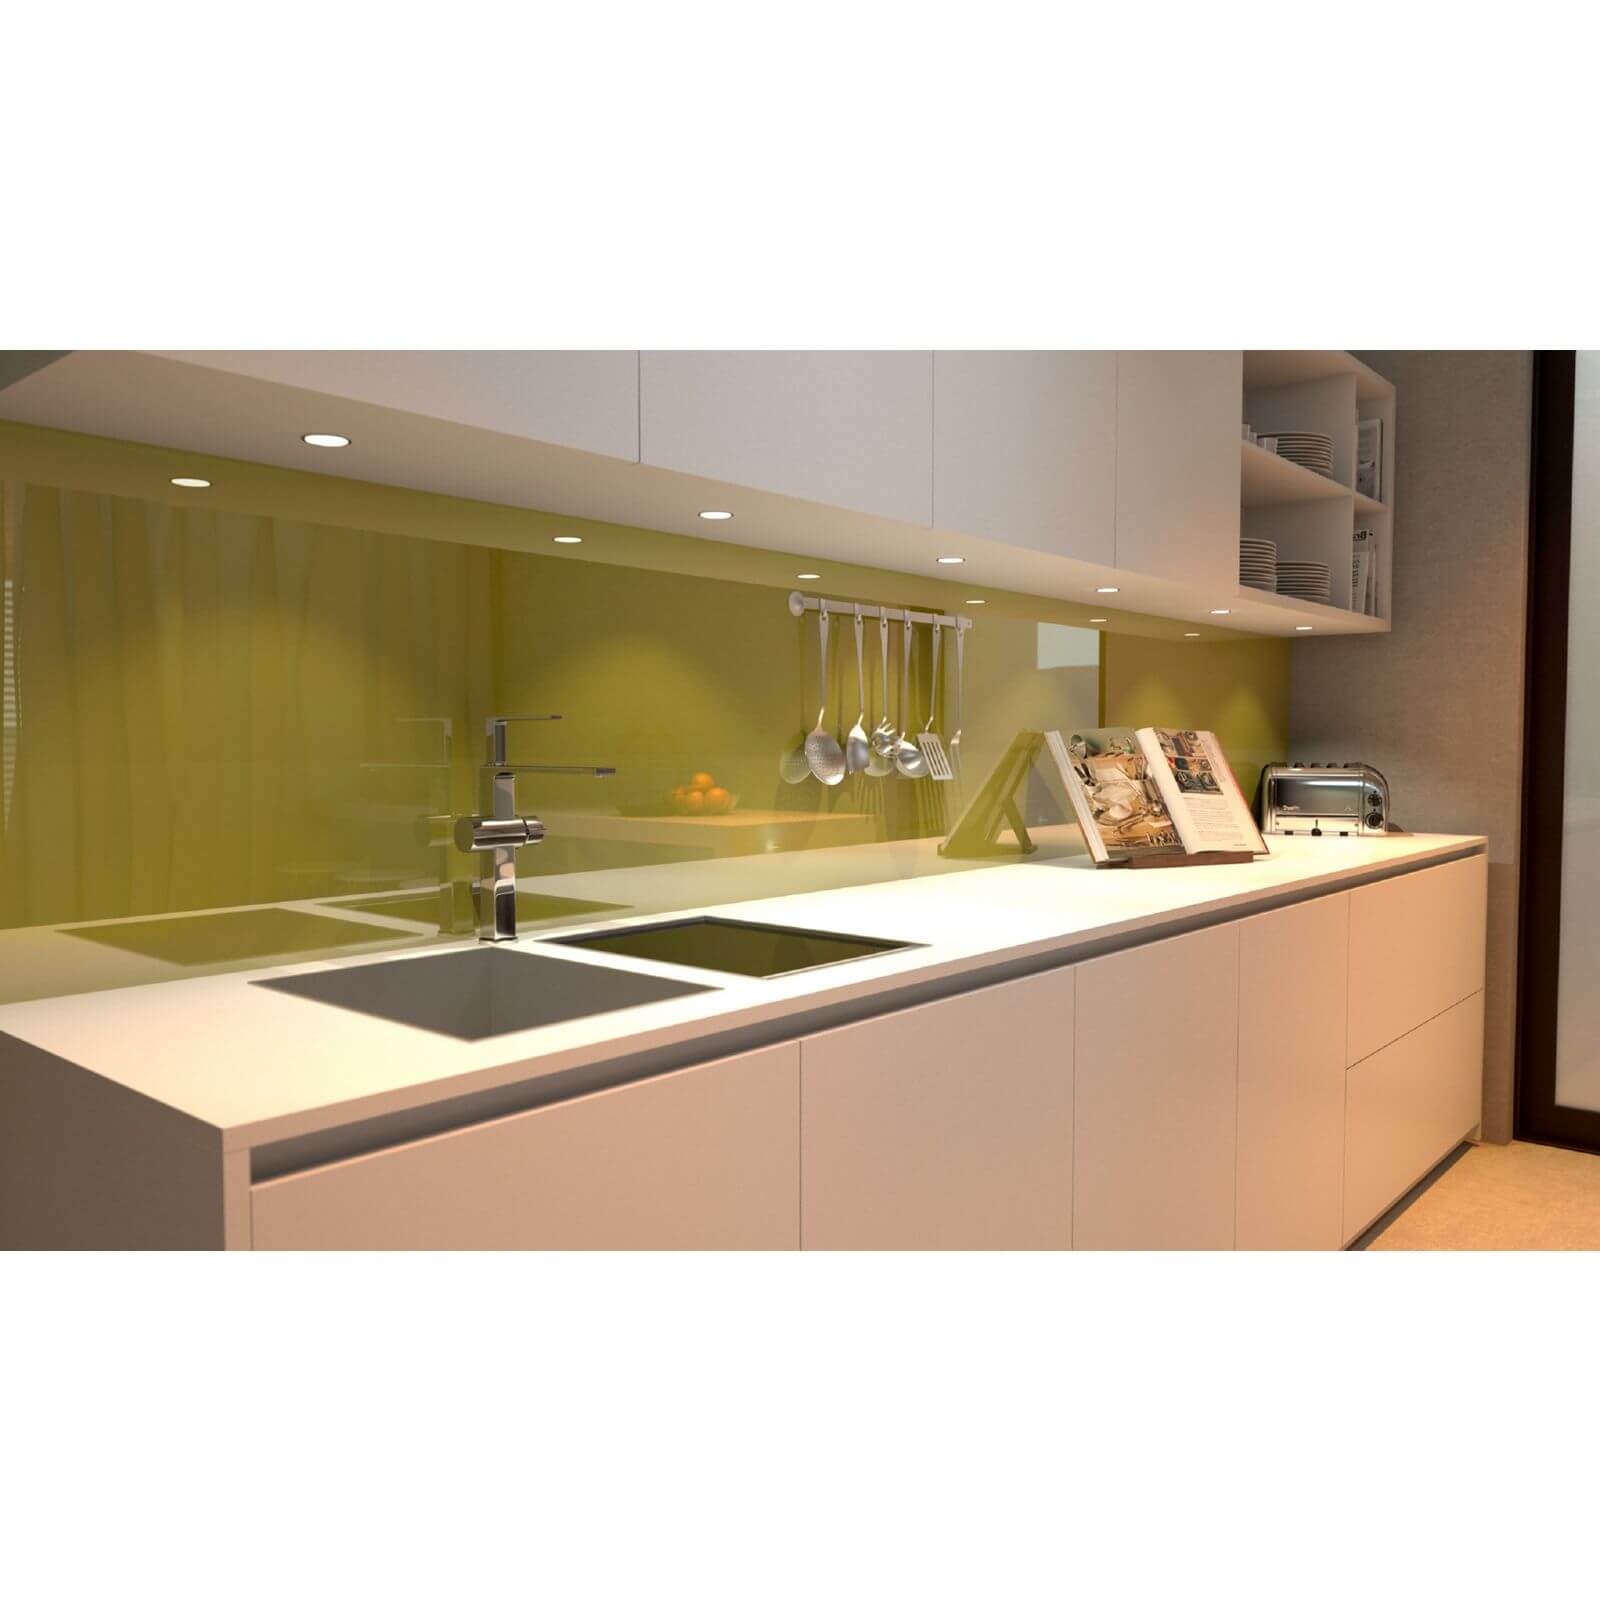 Zenolite Acrylic Kitchen Splashback Panel - 1220 x 1000 x 4mm - Forest